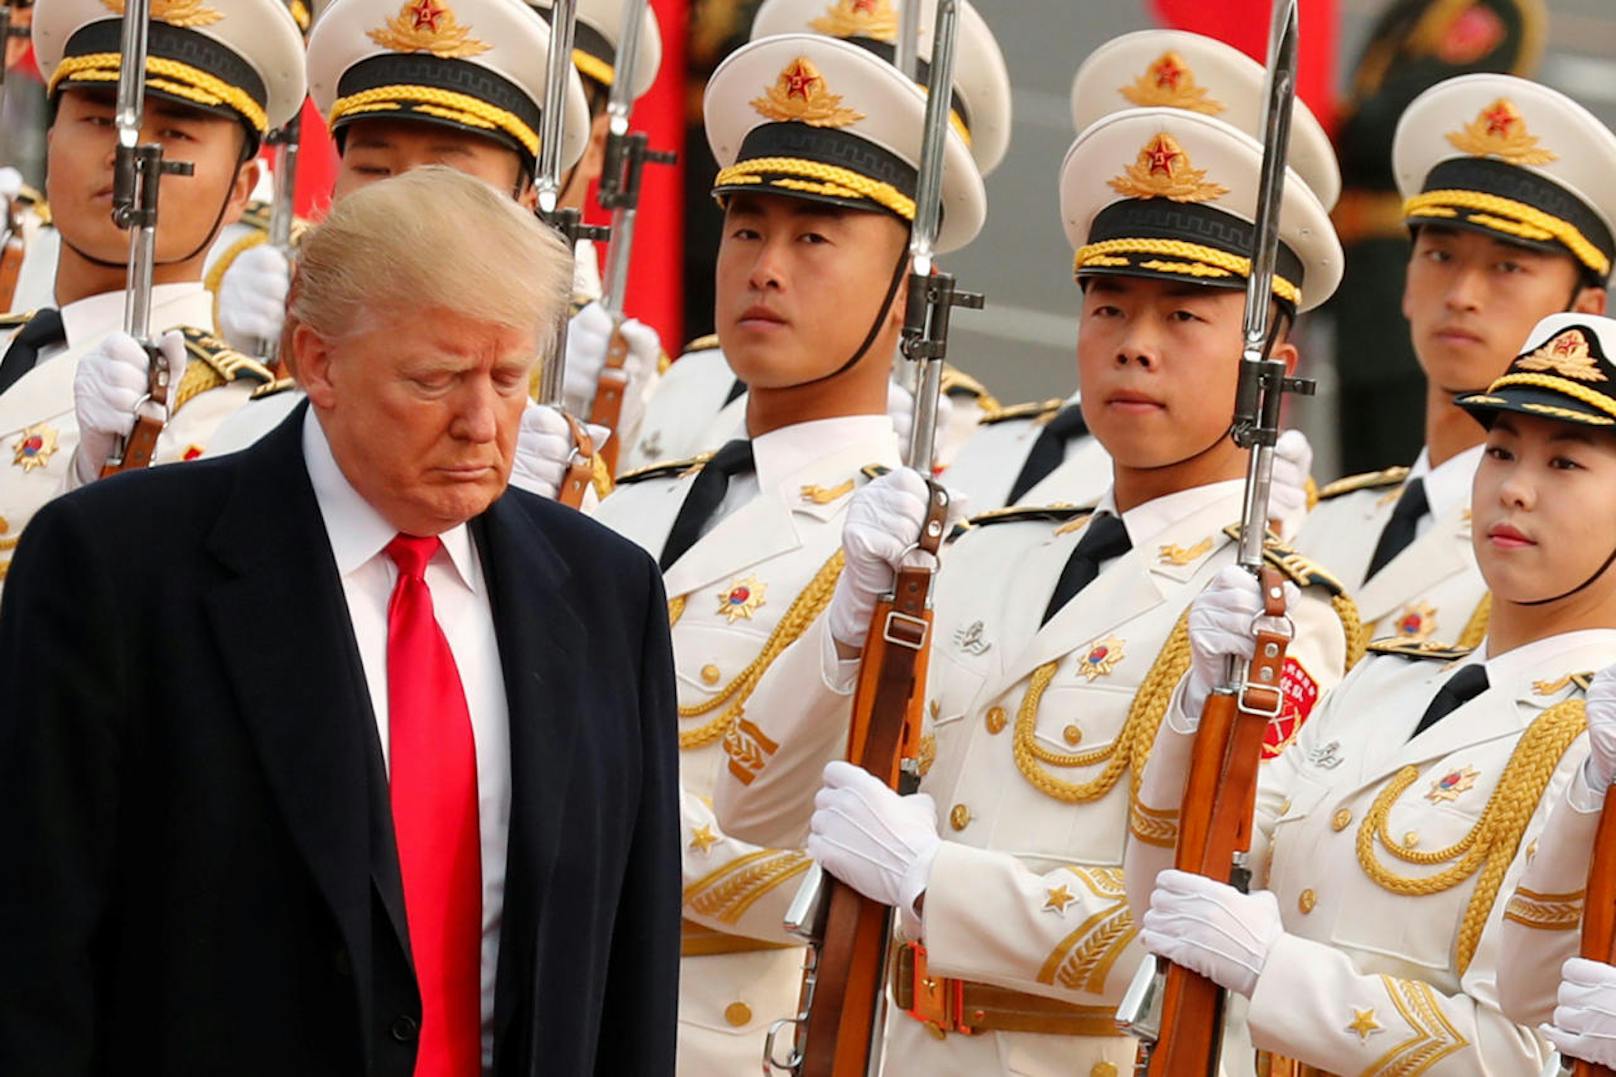 China's Präsident Xi Jinping gibt eine Willkommenszeremonie für US-Präsident Donald Trump.